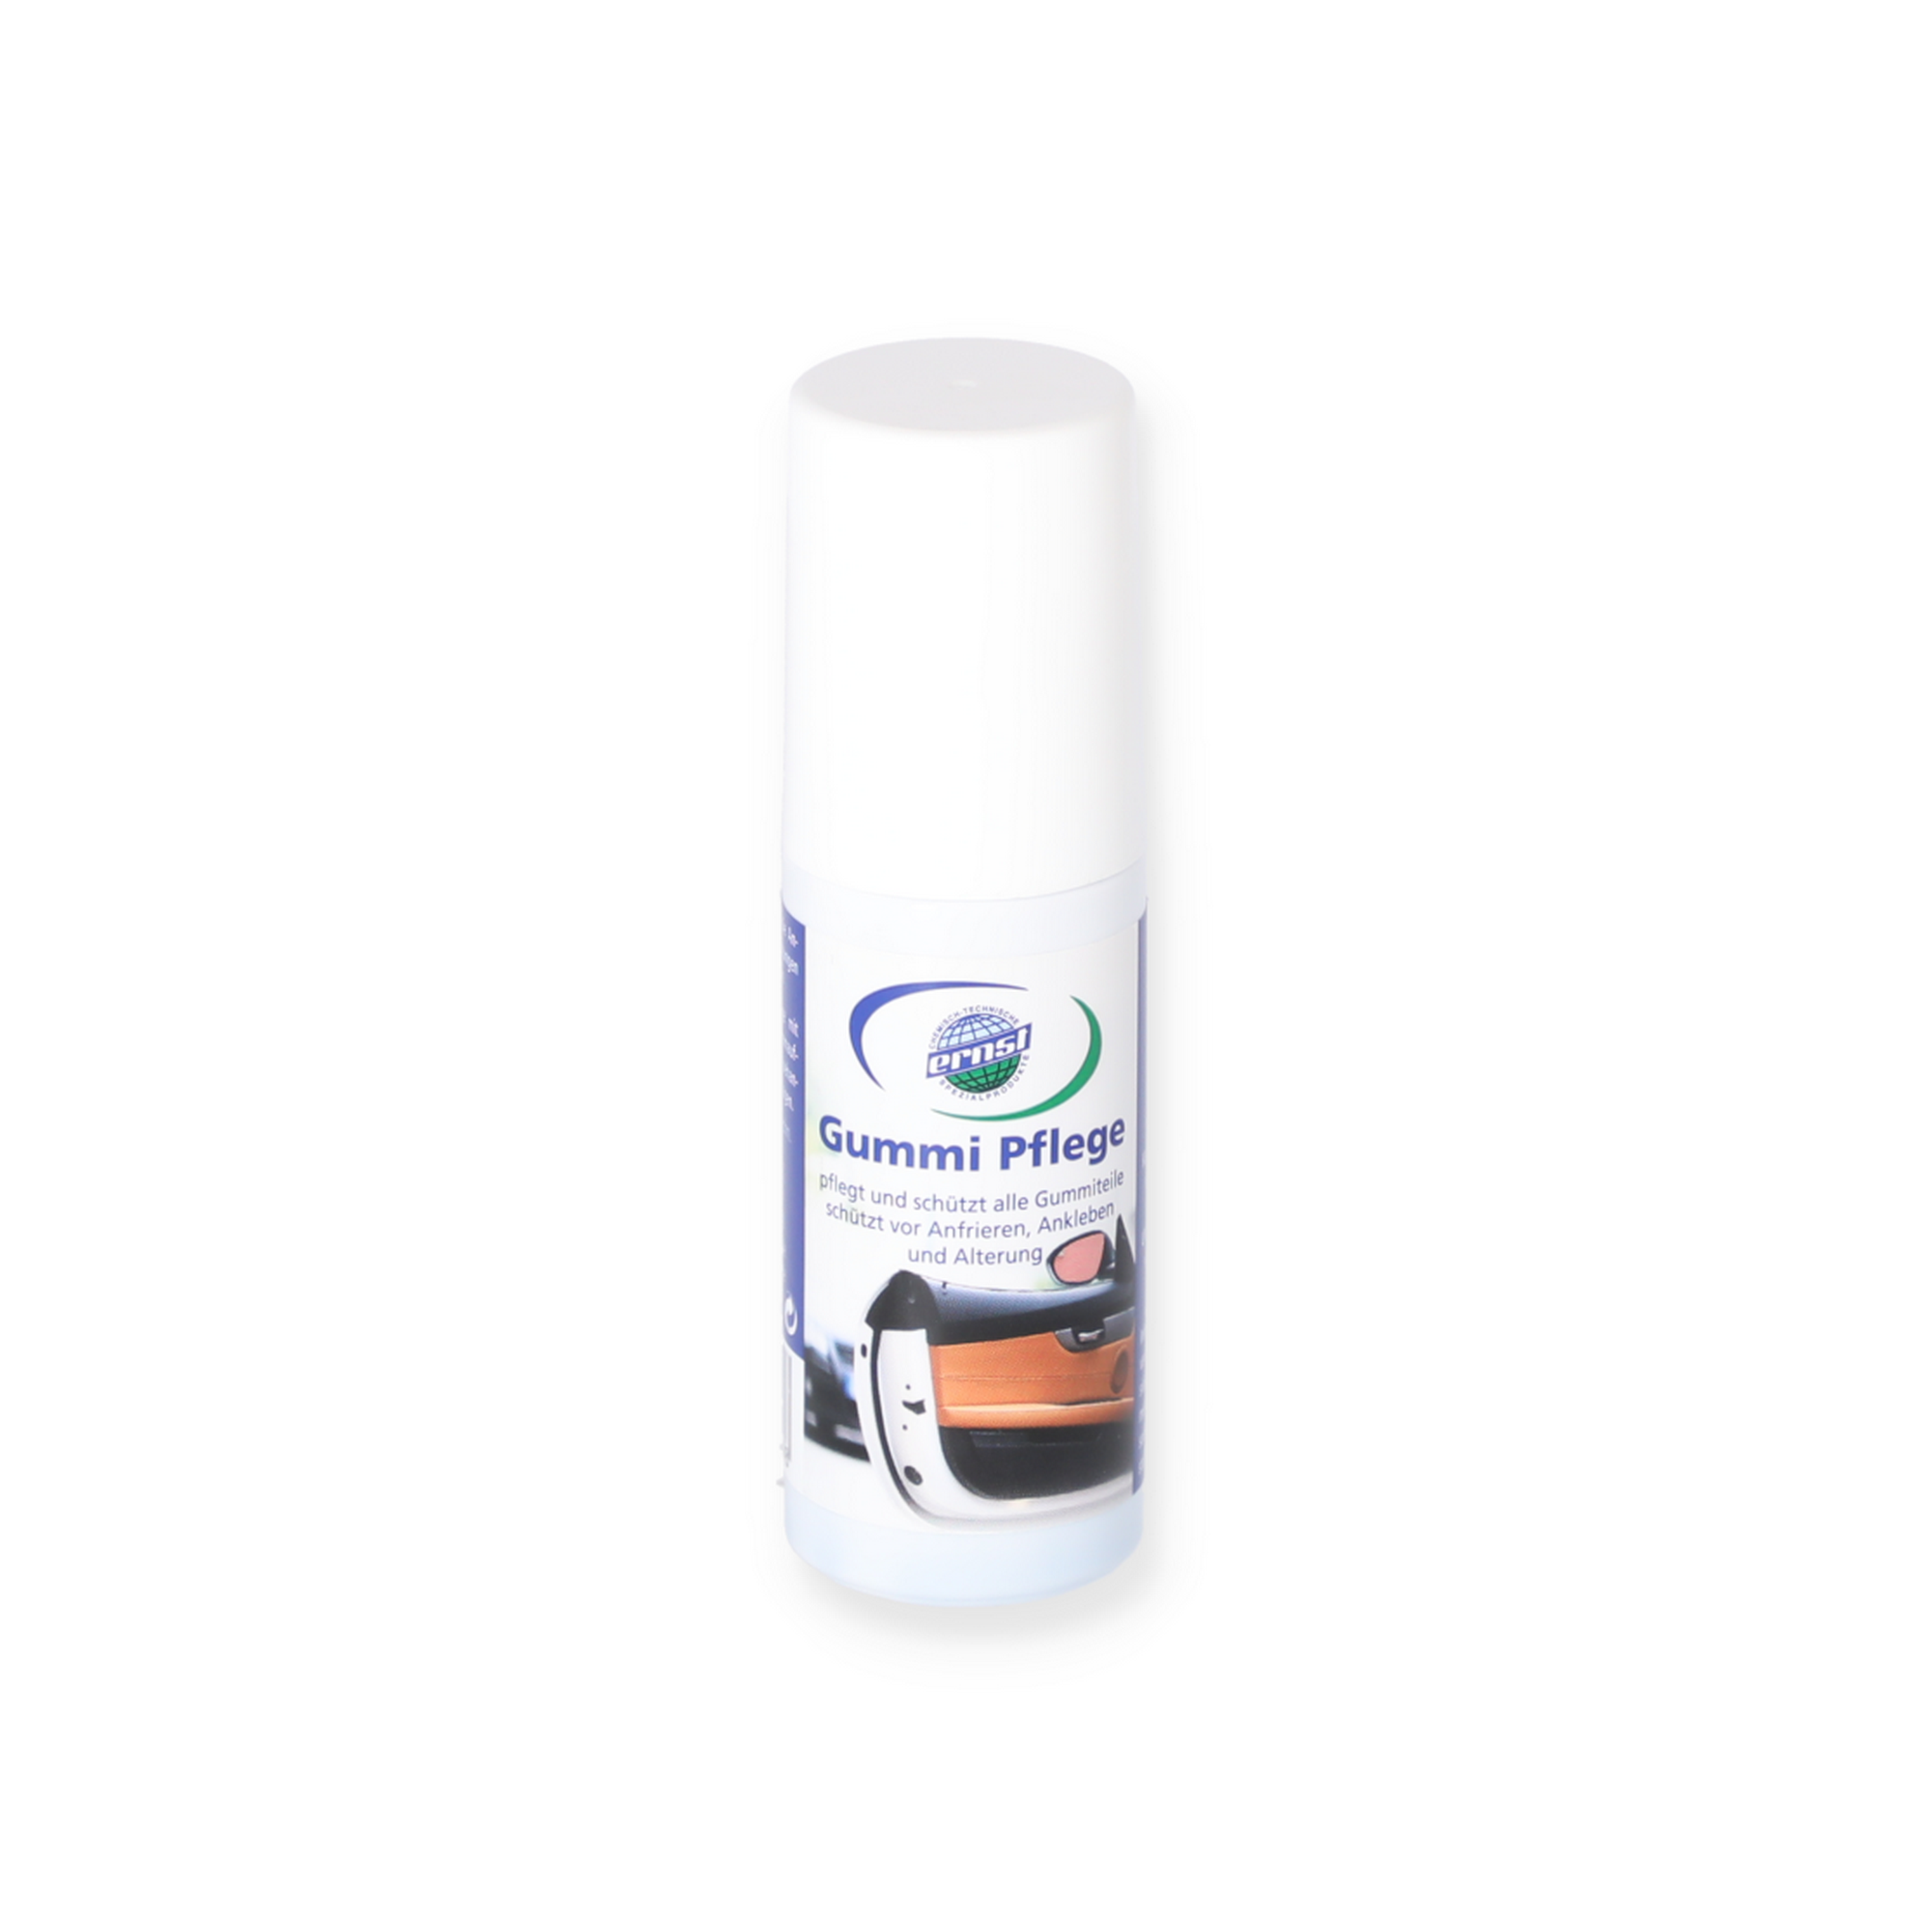 Caramba Power Protect Gummi Pflege (75 ml) – Schutz & Pflege für alle  Gummi-Dichtungen am Auto – Starke Gummipflege schützt vor Alterung,  Anfrieren